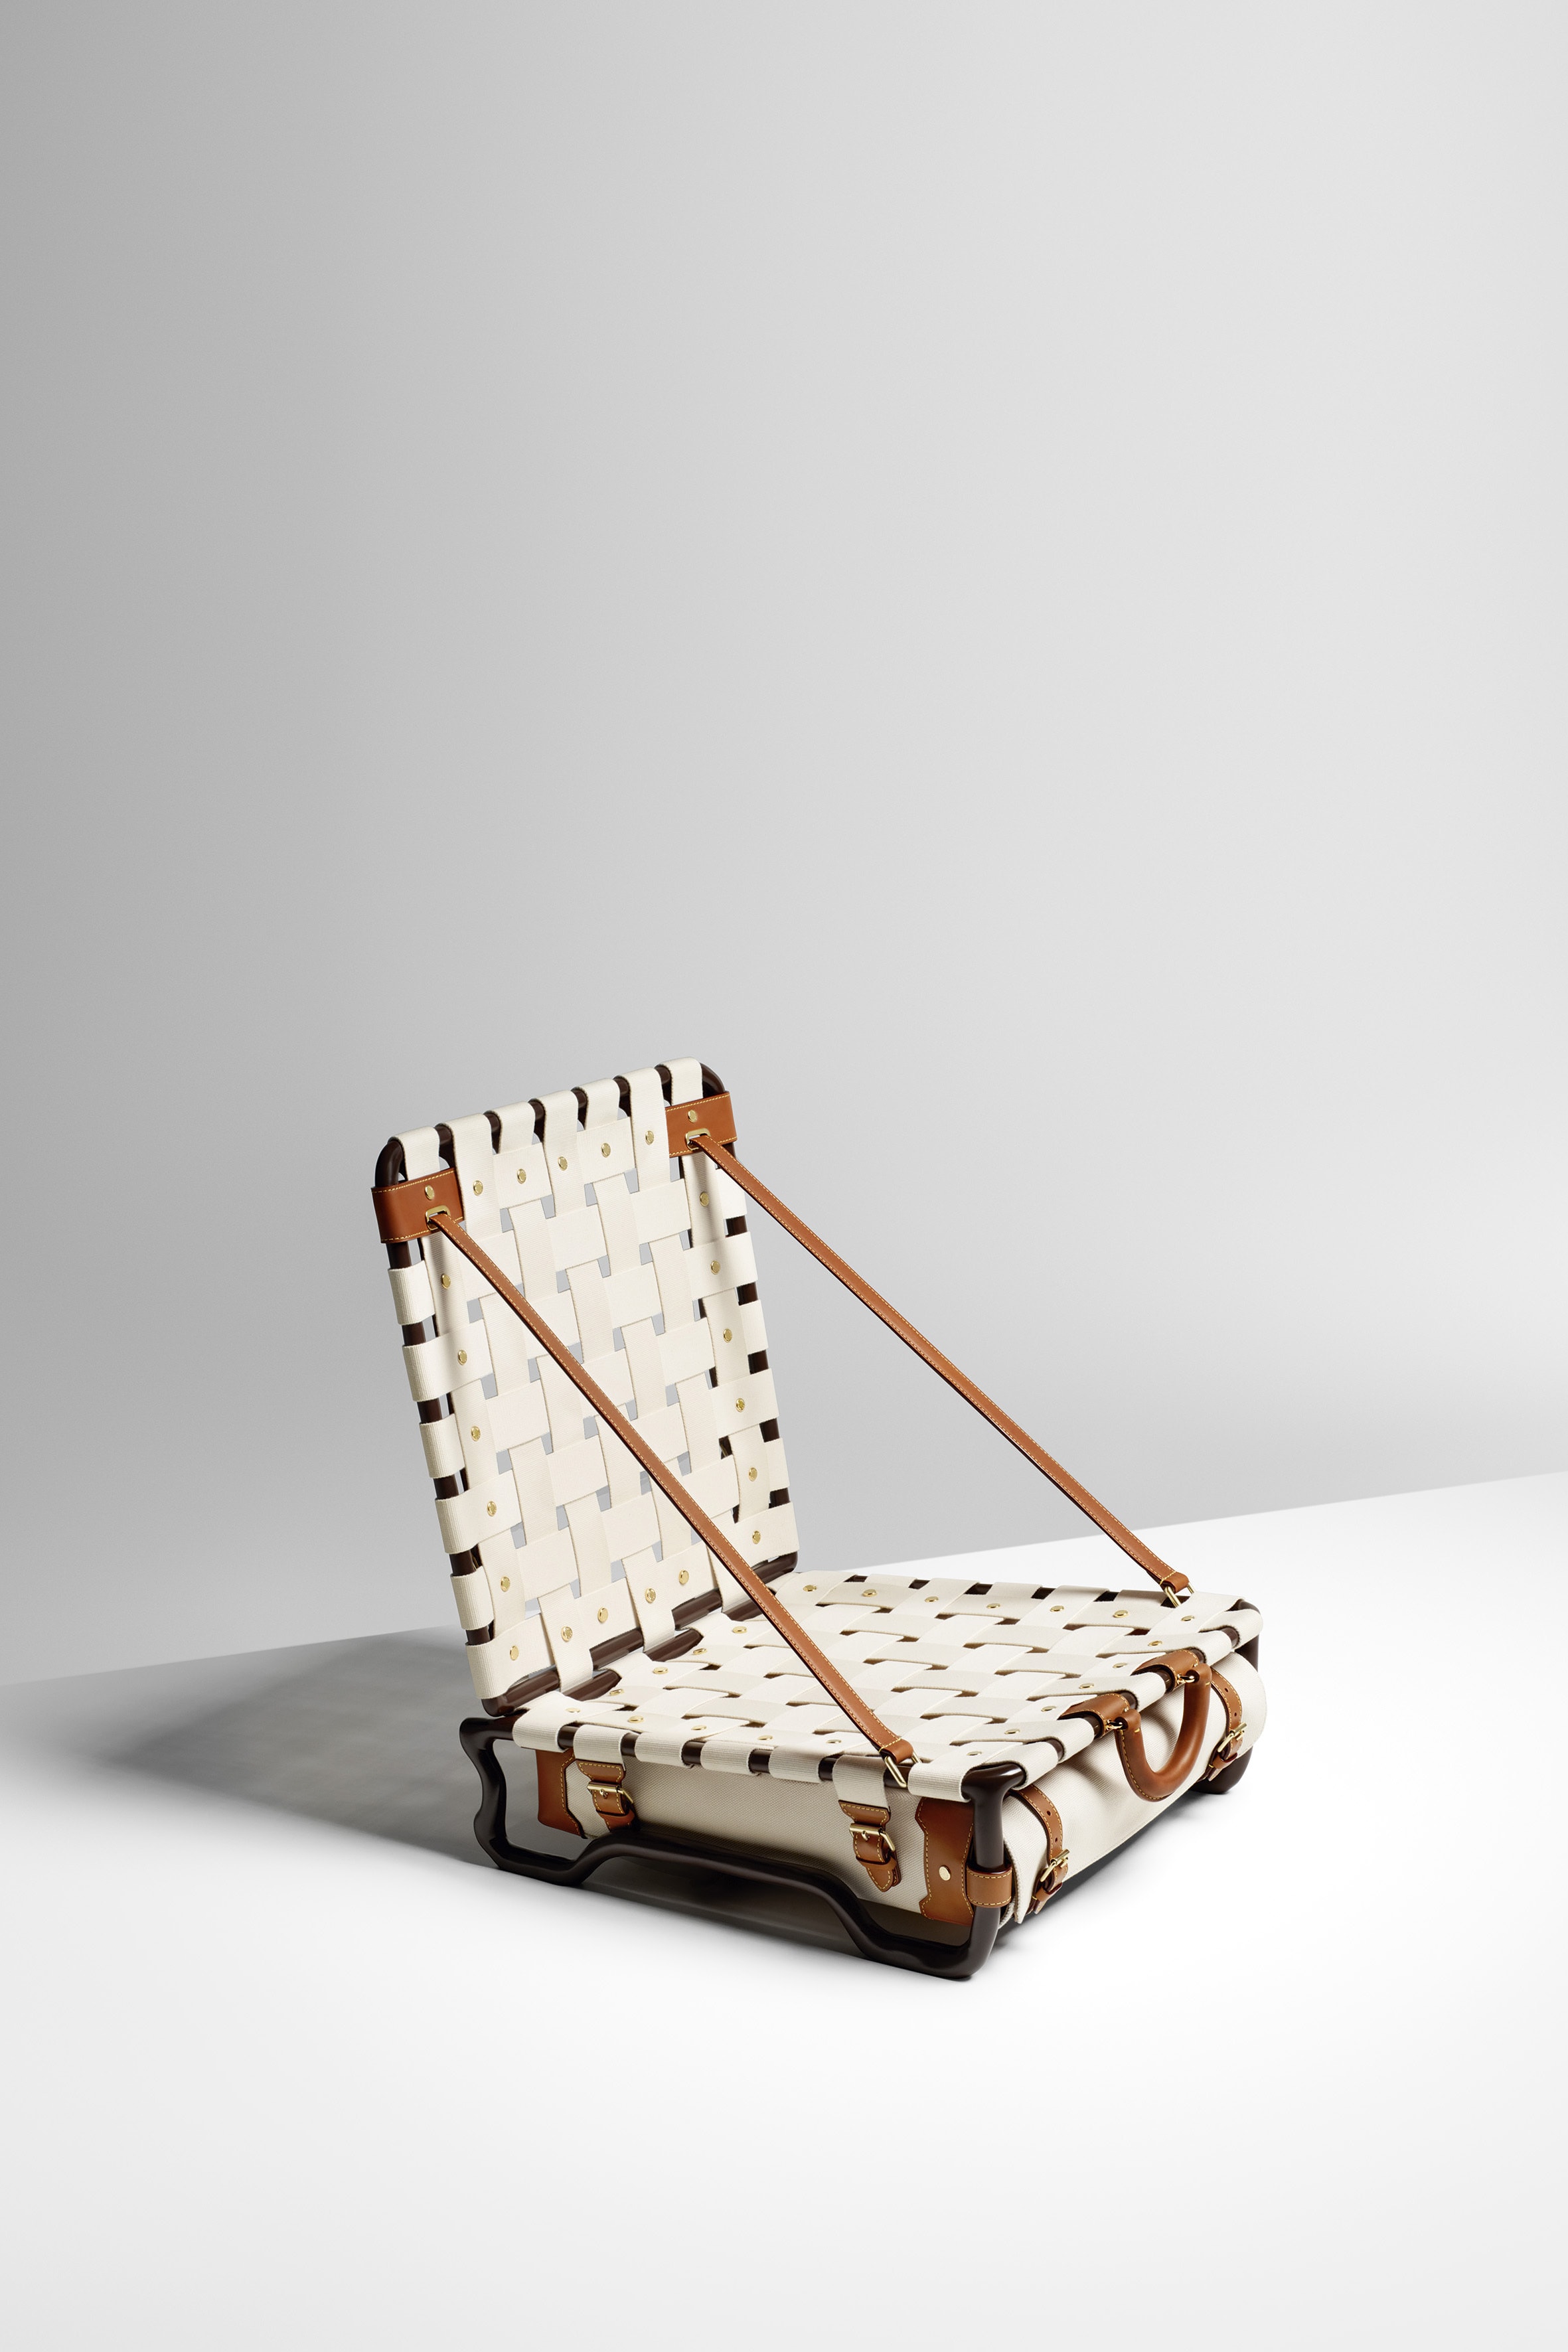 Louis Vuitton Objets Nomades Suitcase